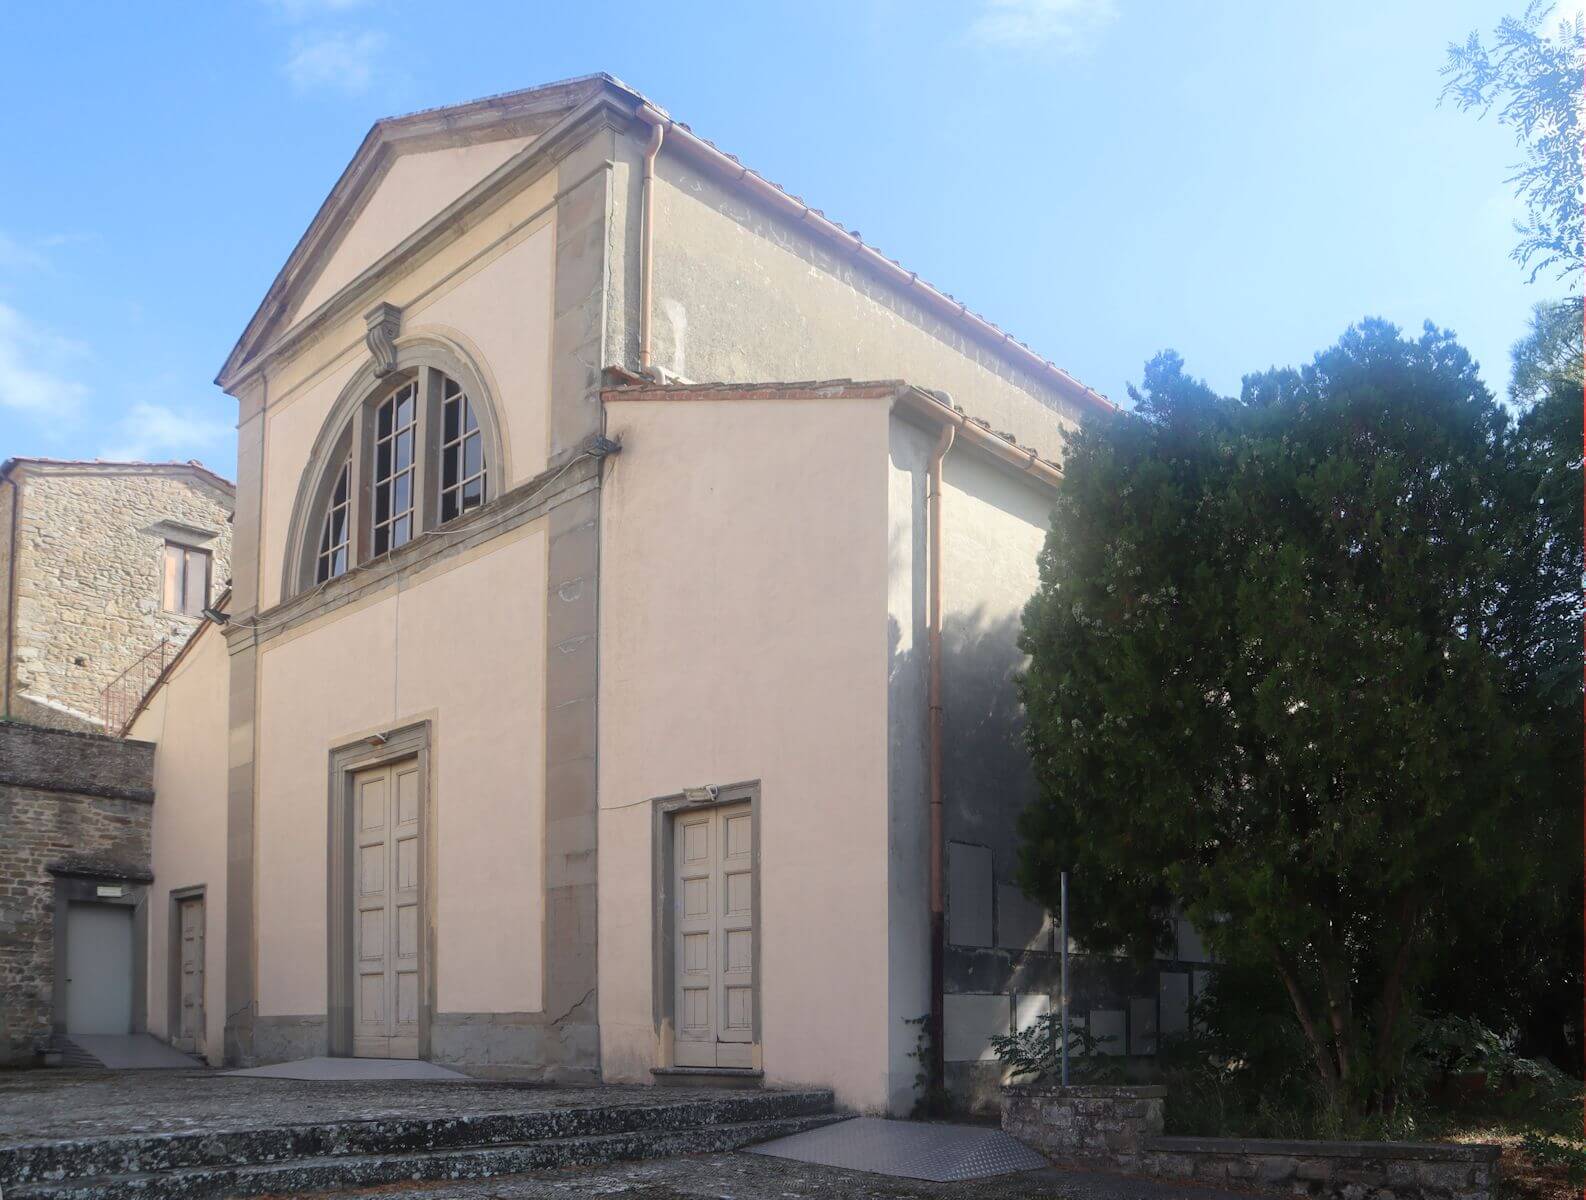 Kirche Sant'Alessandro in Fiesole, heute säkularisiert